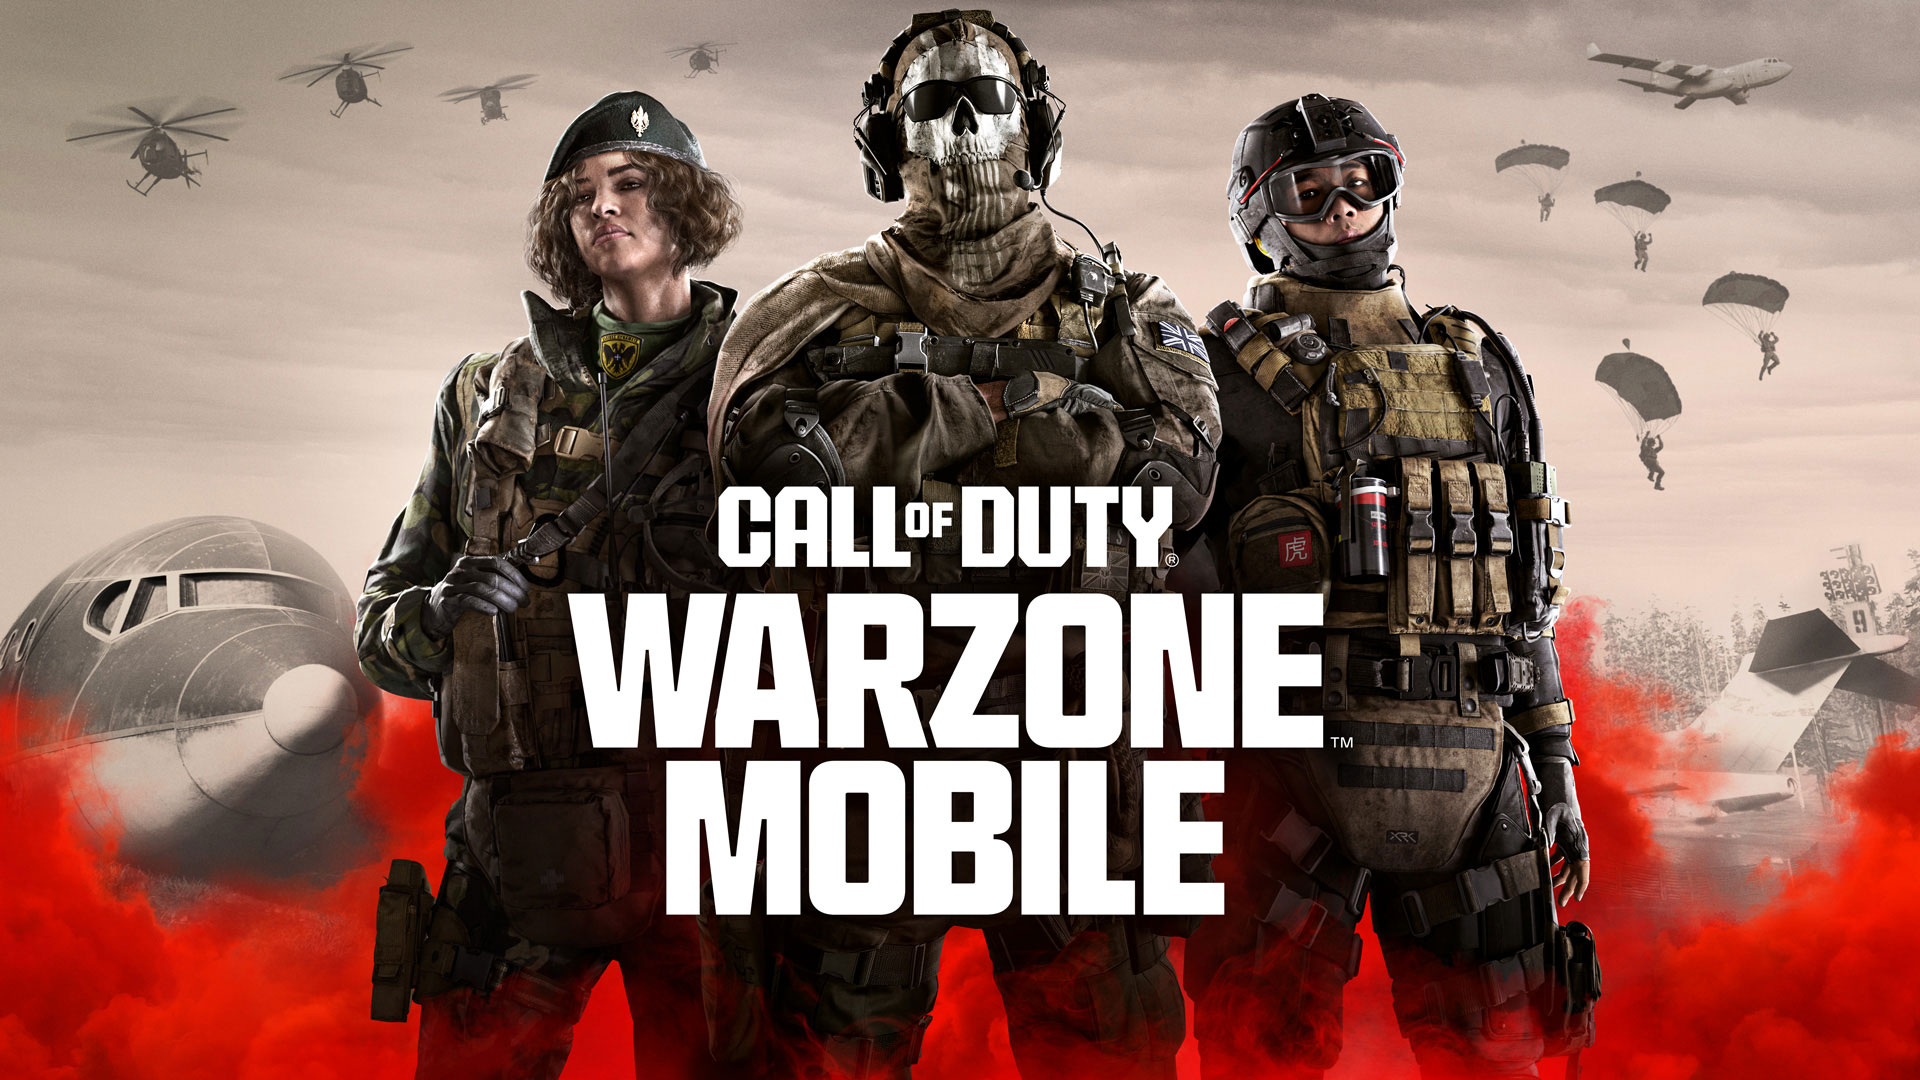 21 de marzo estreno de Call of Duty: Warzone Mobile en iOS y Android